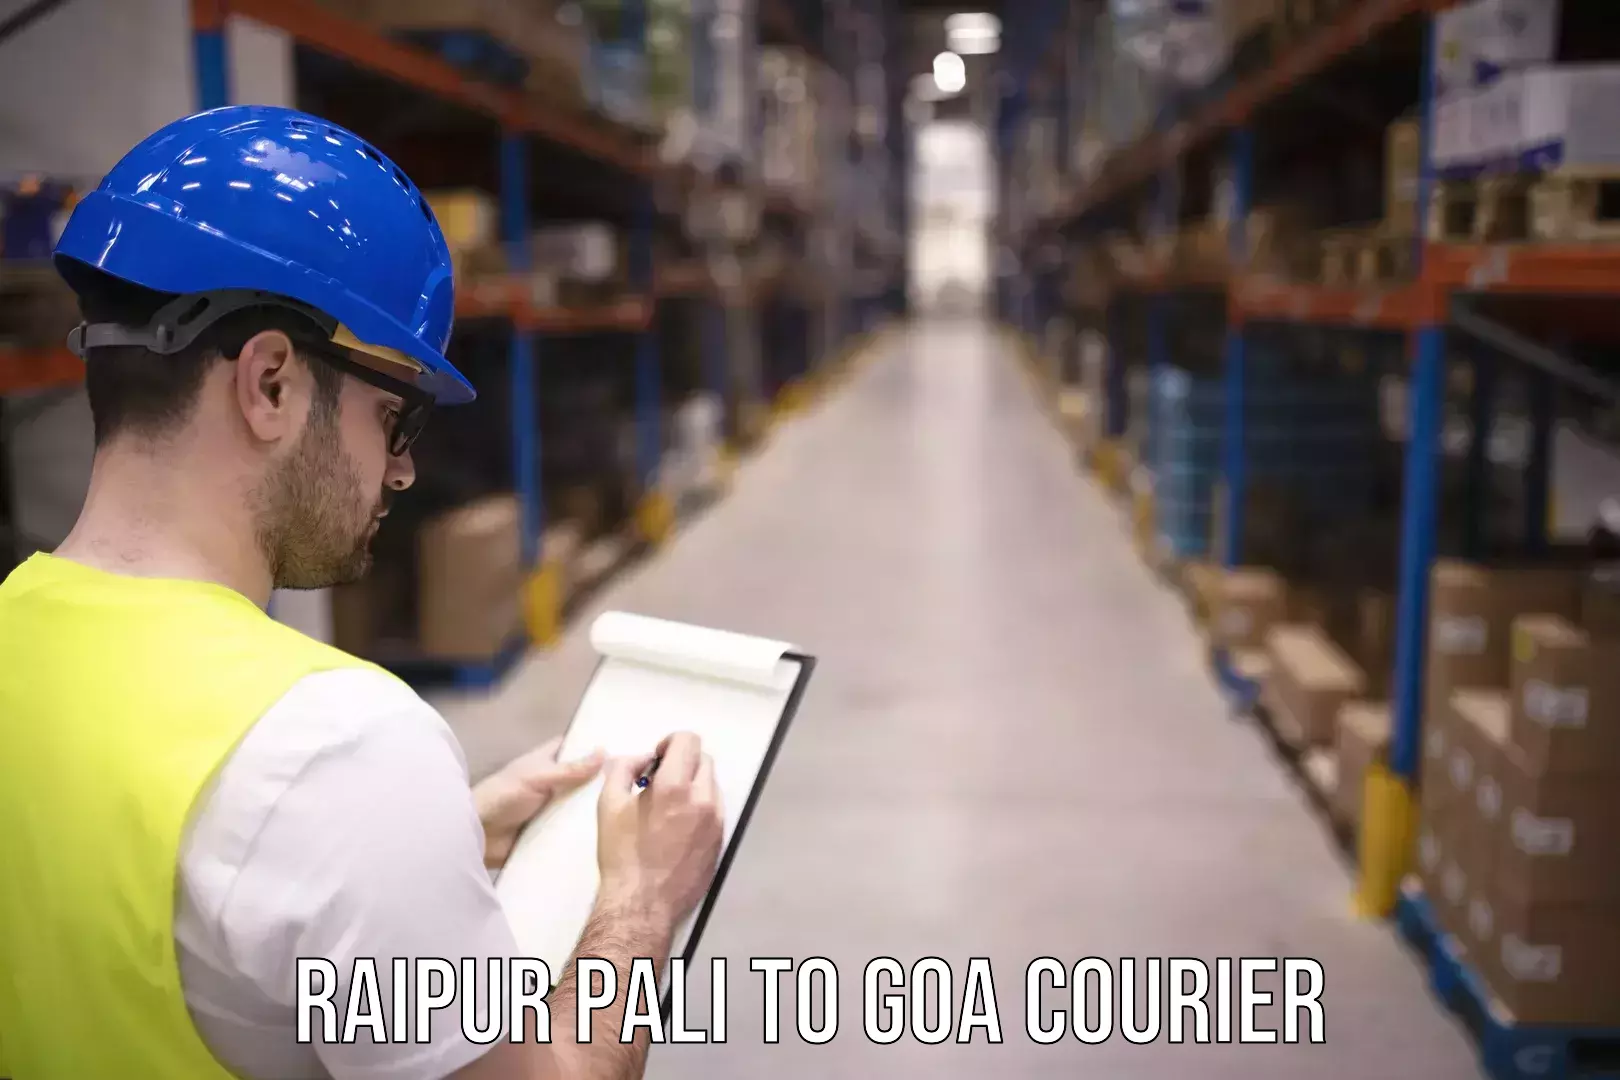 Bulk courier orders Raipur Pali to Vasco da Gama